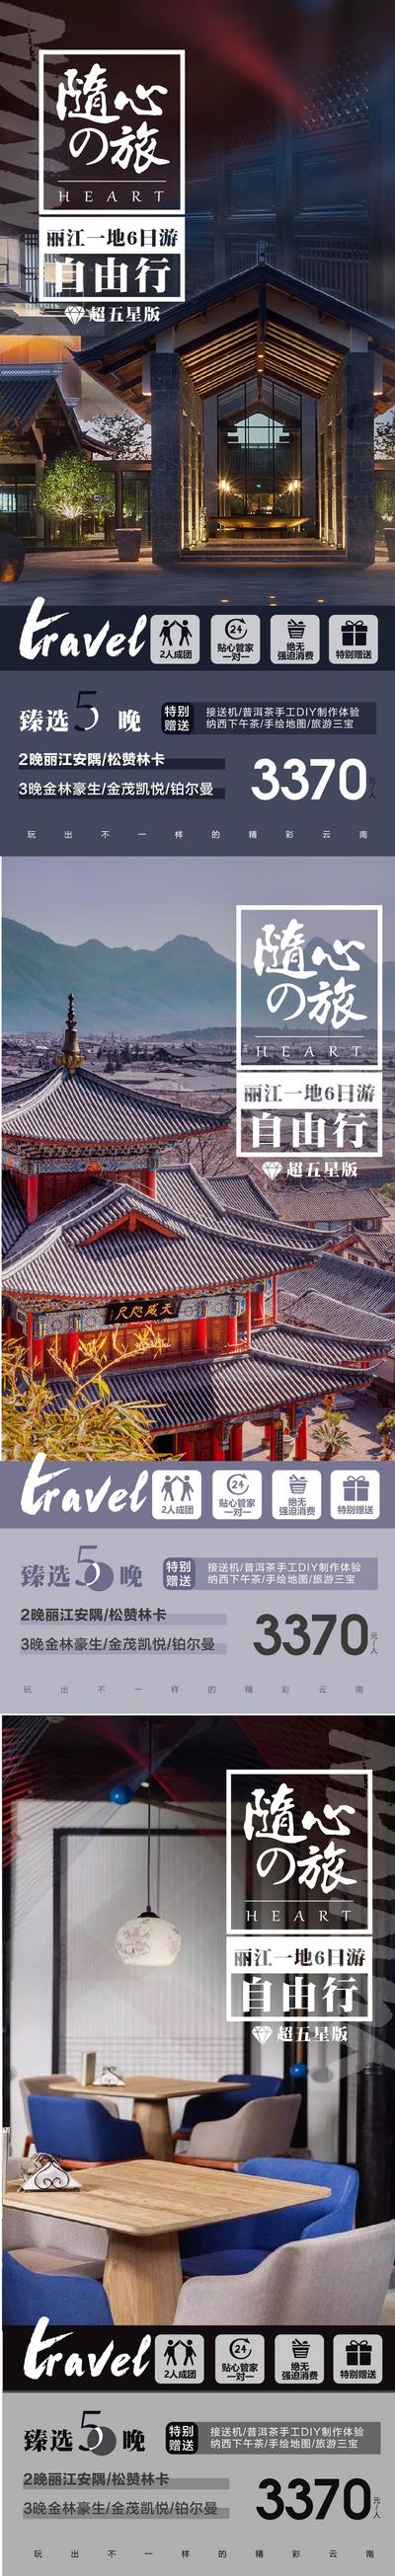 南门网 海报 旅游 云南 丽江 大理 自由行 铂尔曼酒店